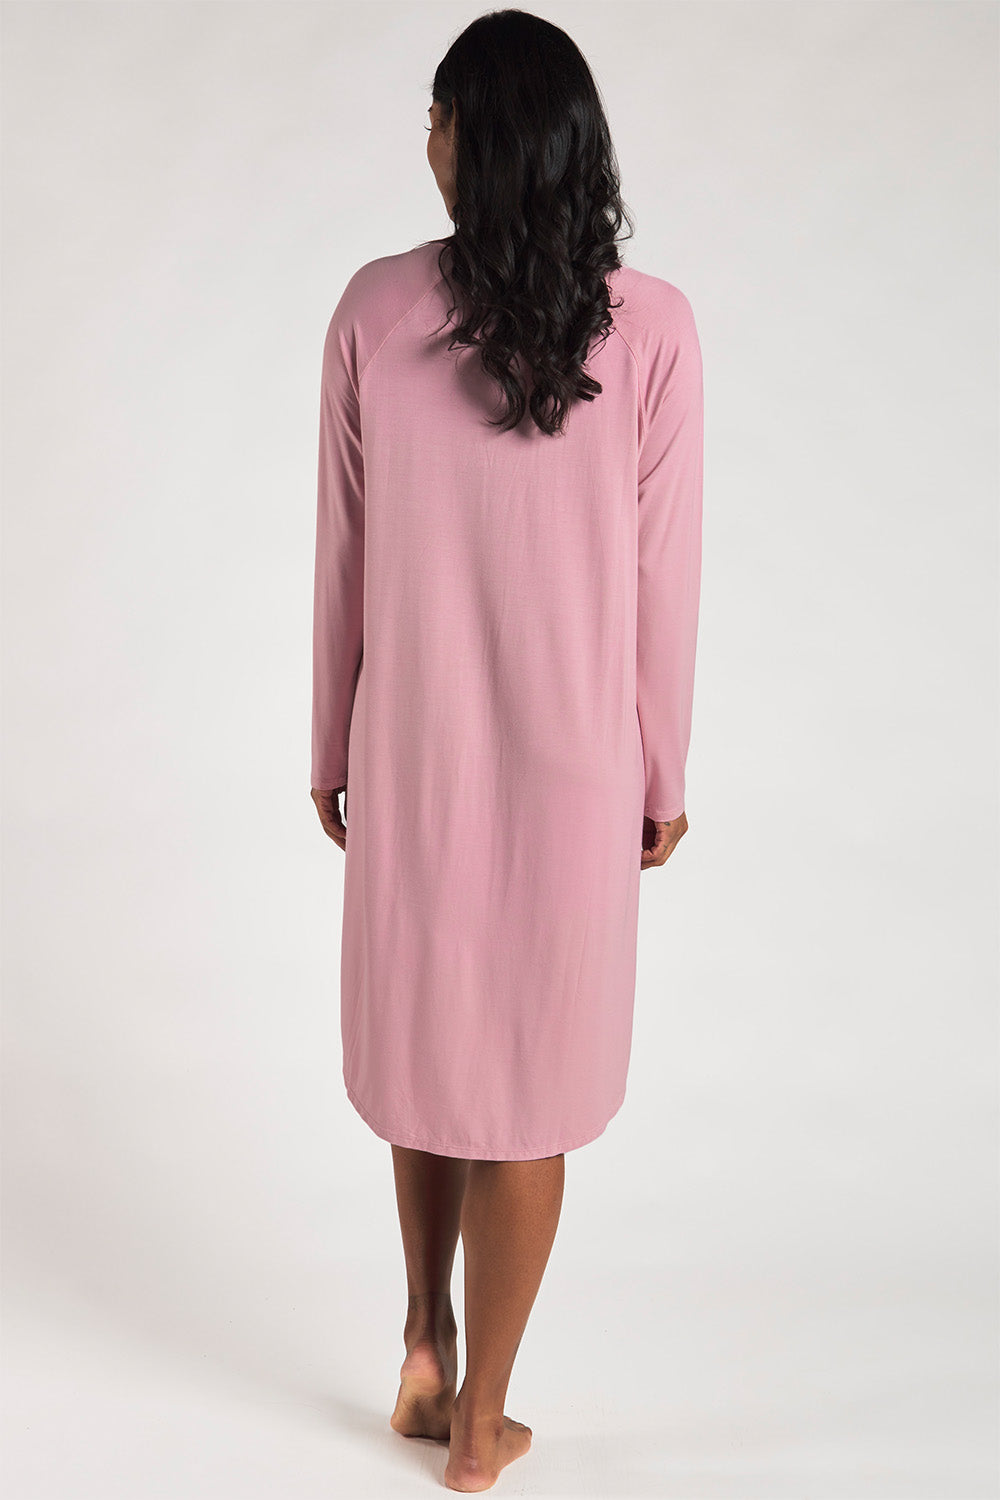 Hush Bamboo Sleep Dress - Pink – Terrera